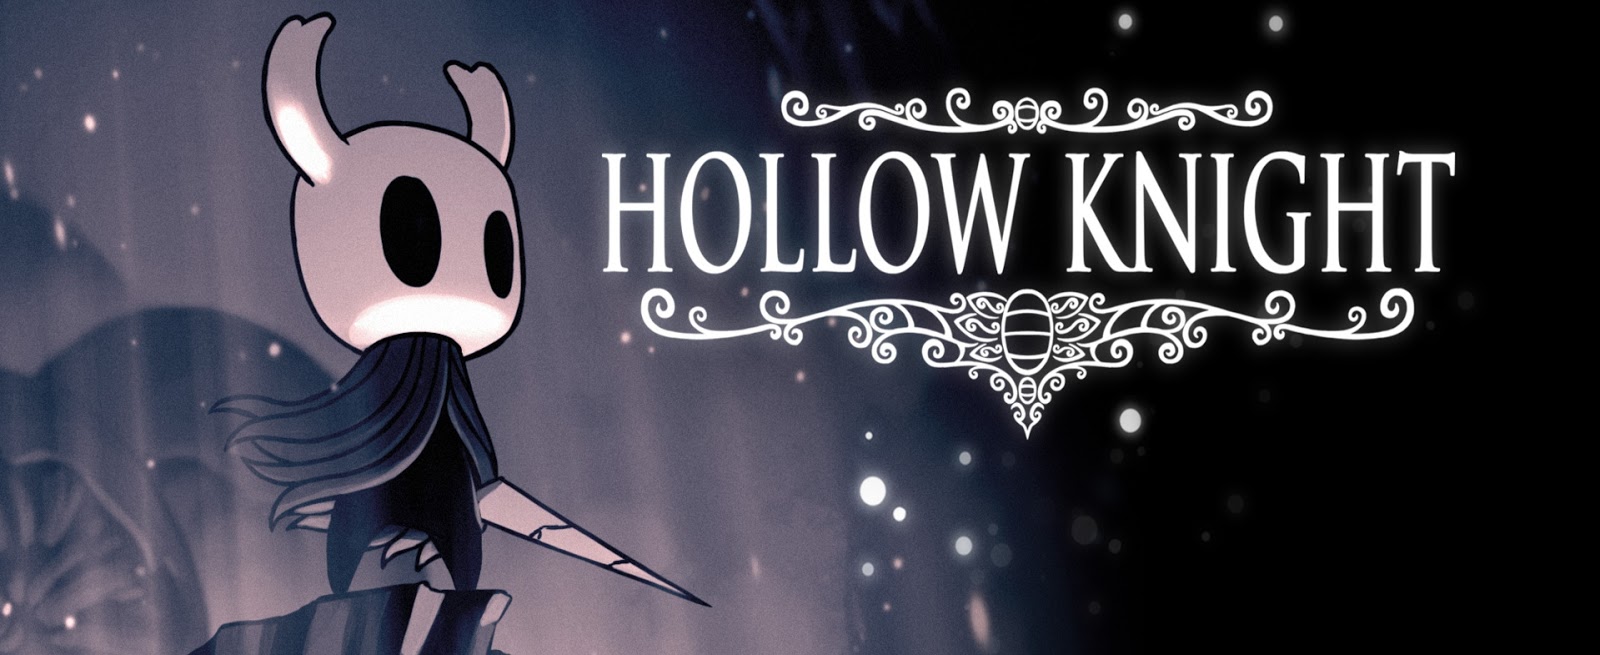 Análise Hollow Knight Pc é Um Metroidvania Sombrio E Muito